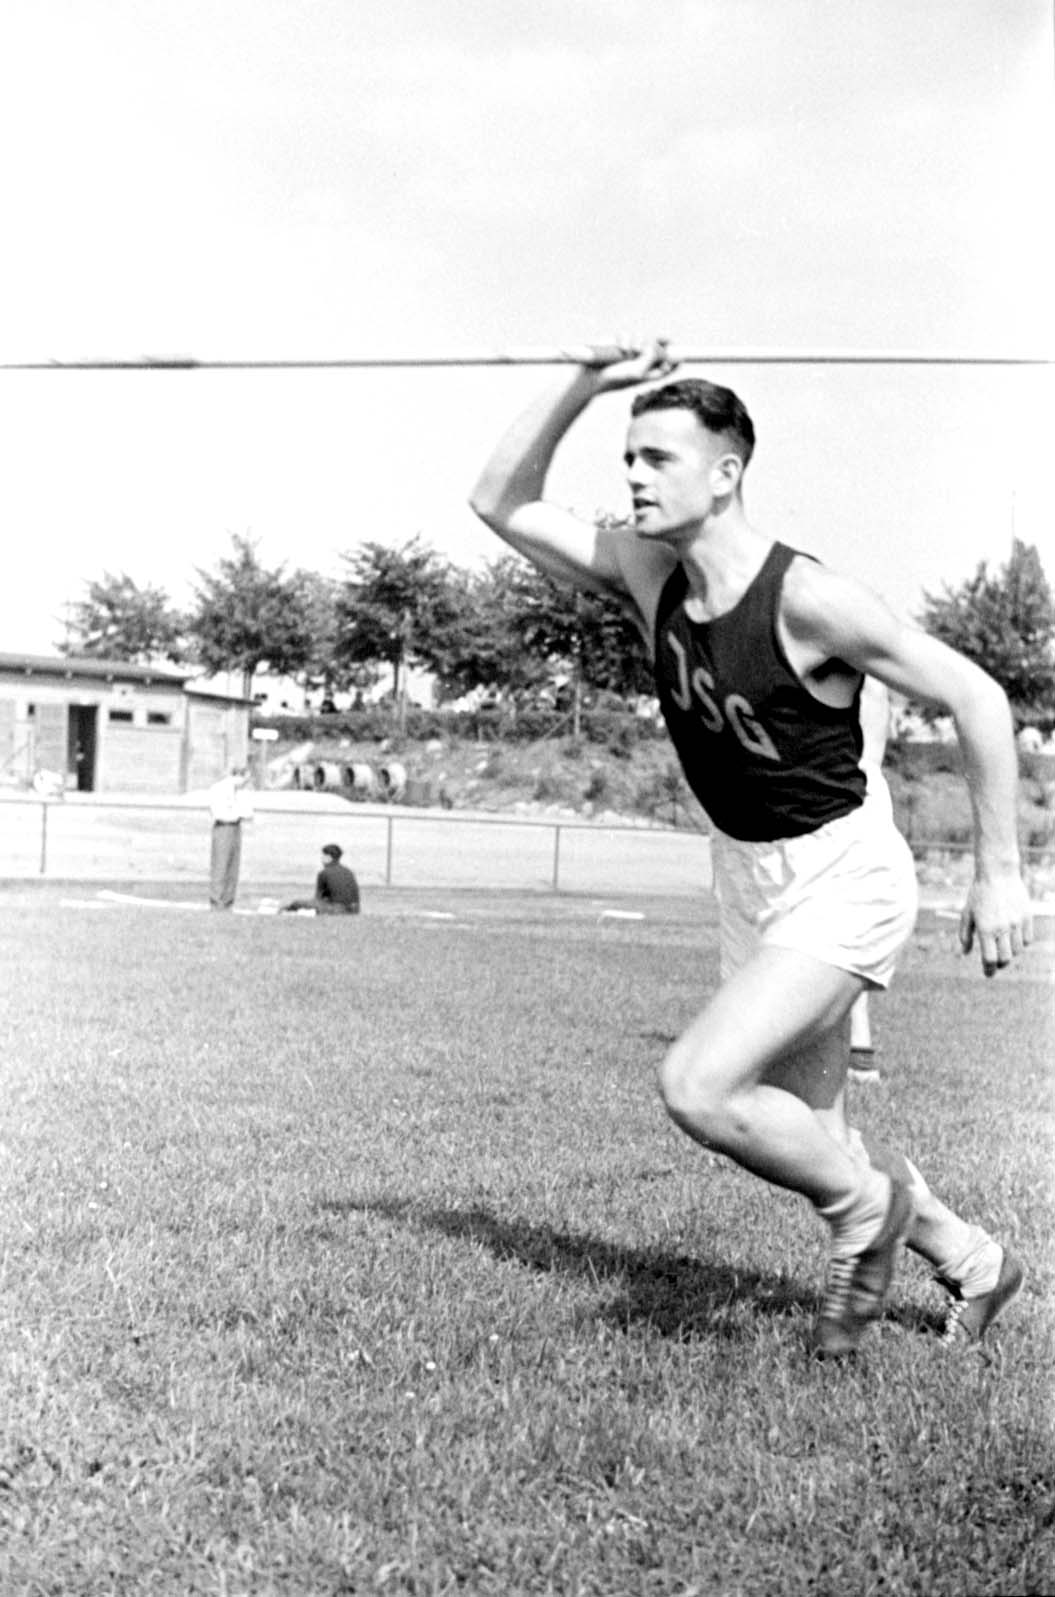 ברלין, גרמניה, 4 ביולי 1937, קלאוס  פרטנר (Klaus Pfoertner), המנצח בתחרות הטלת הכידון בתחרויות הספורט  היהודי